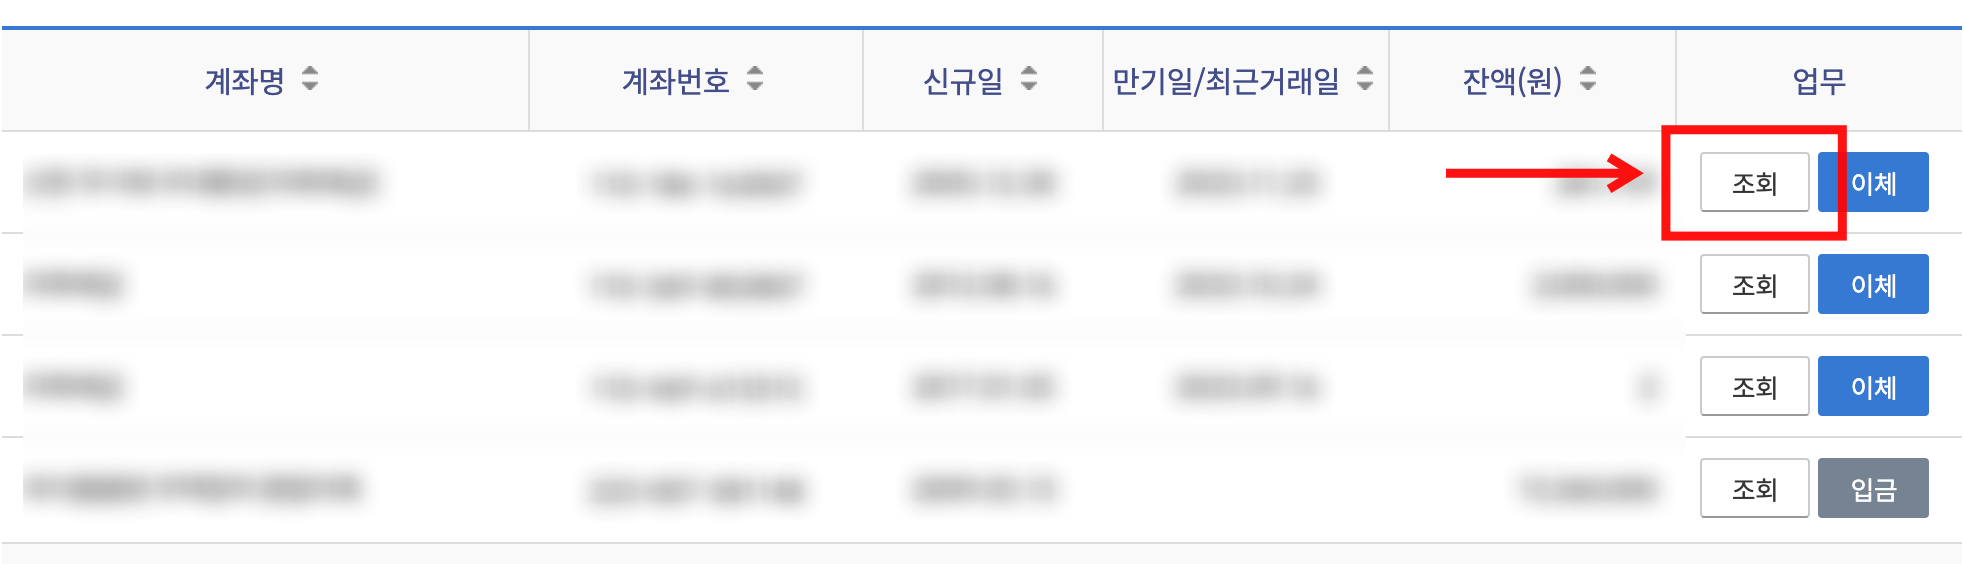 신한은행-인터넷뱅킹-전계좌조회-화면